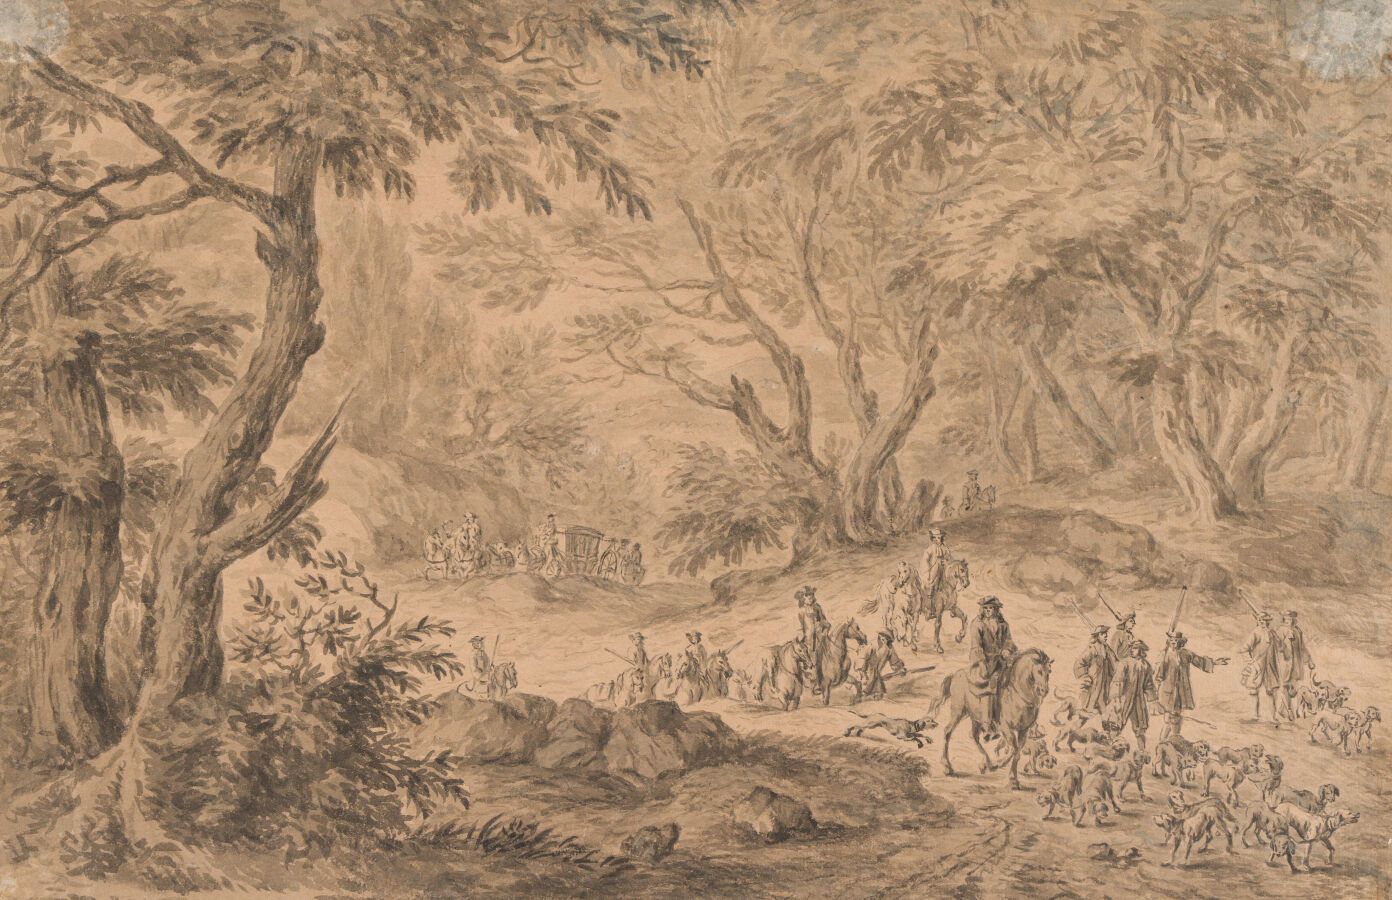 Null 10. Adam Frans VAN DER MEULEN (1632 - 1690)

L'equipaggio e il suo branco i&hellip;